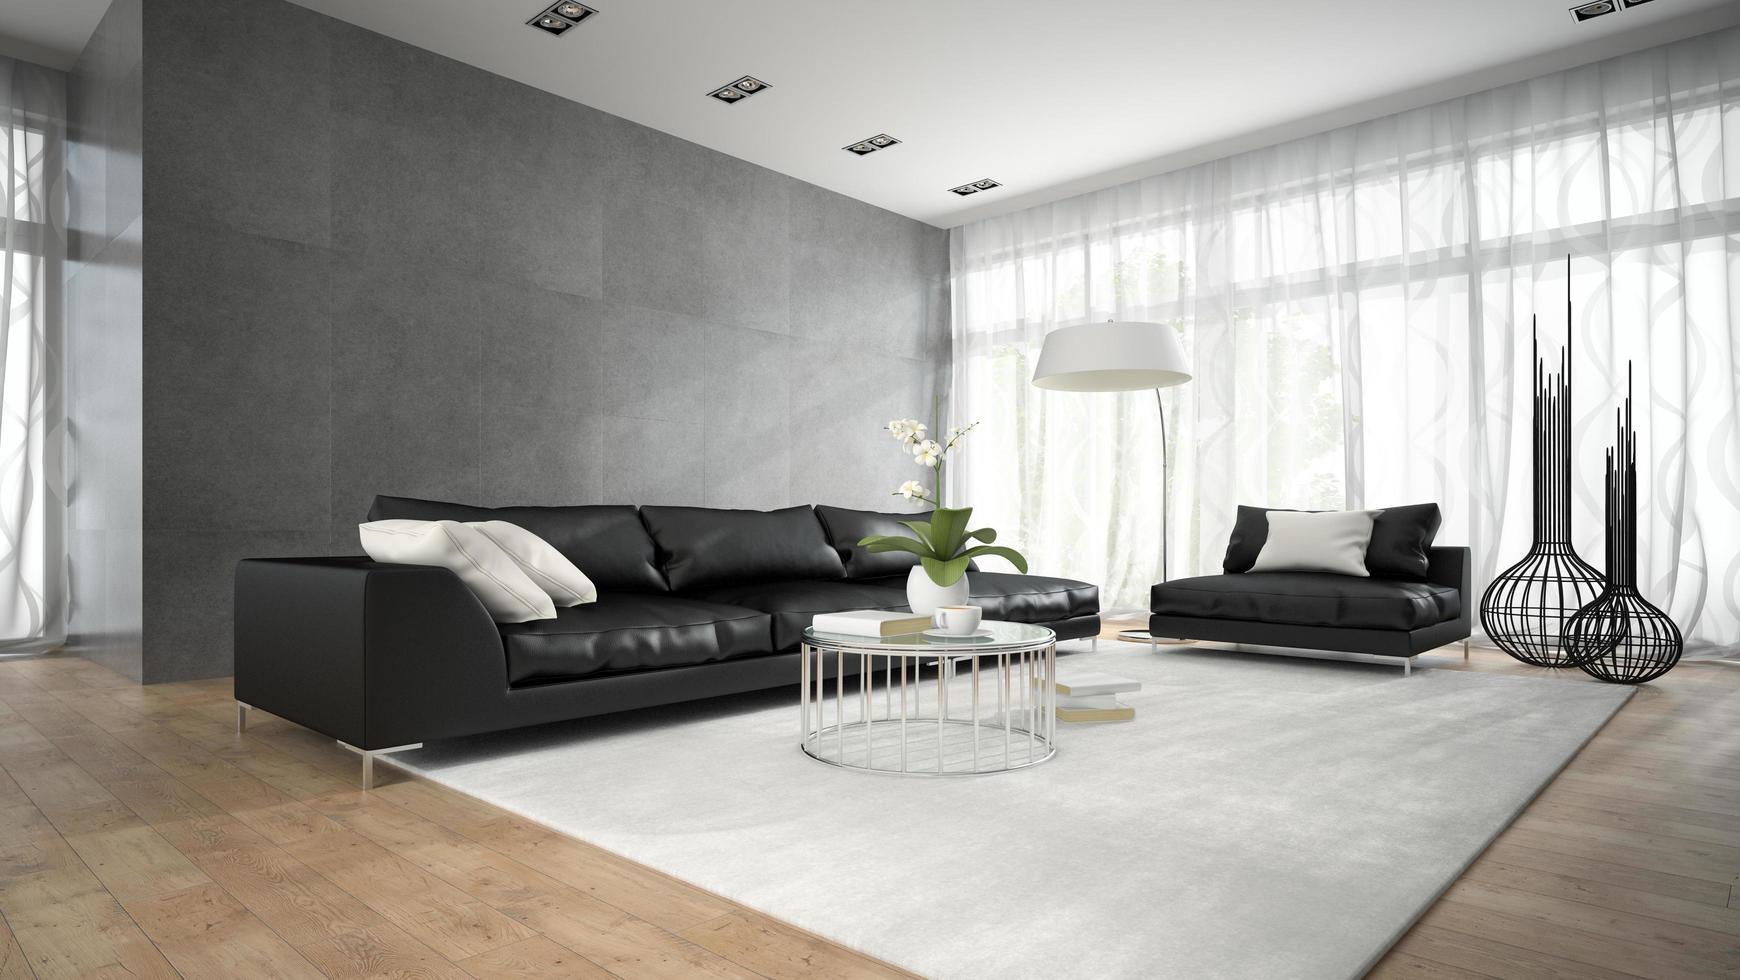 Interior de una habitación moderna con sofás negros en 3D rendering foto